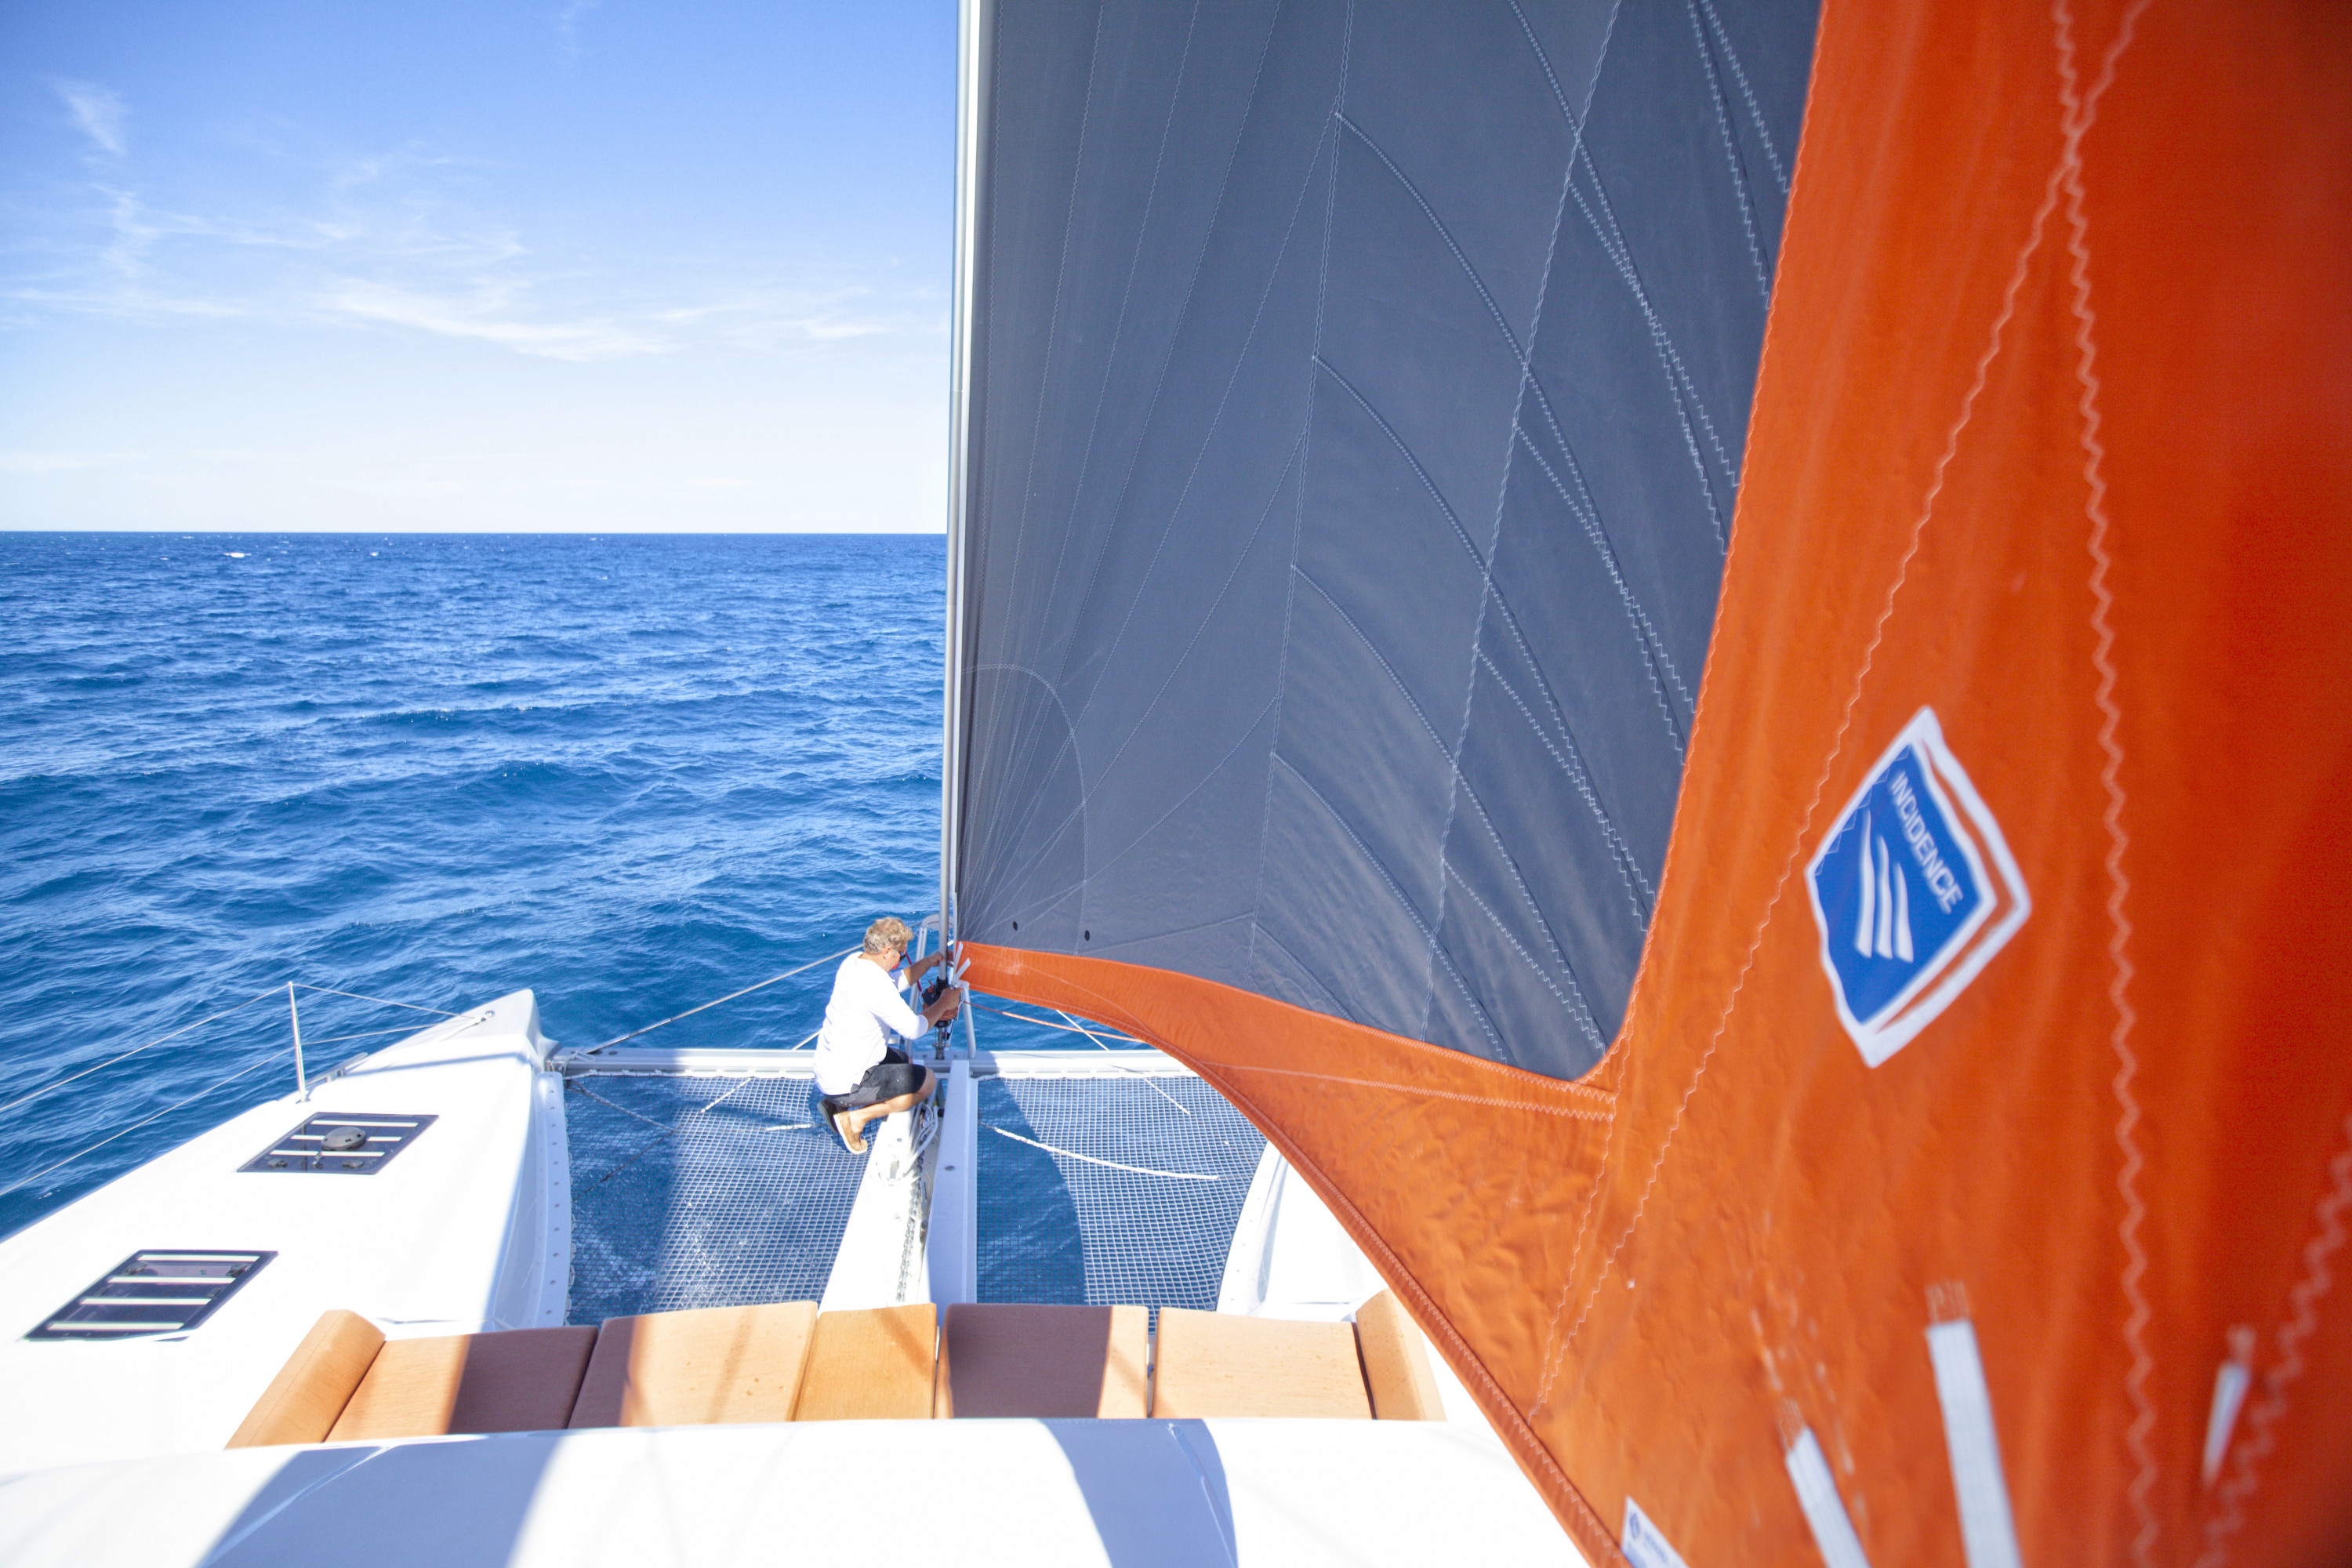 righting a capsized catamaran